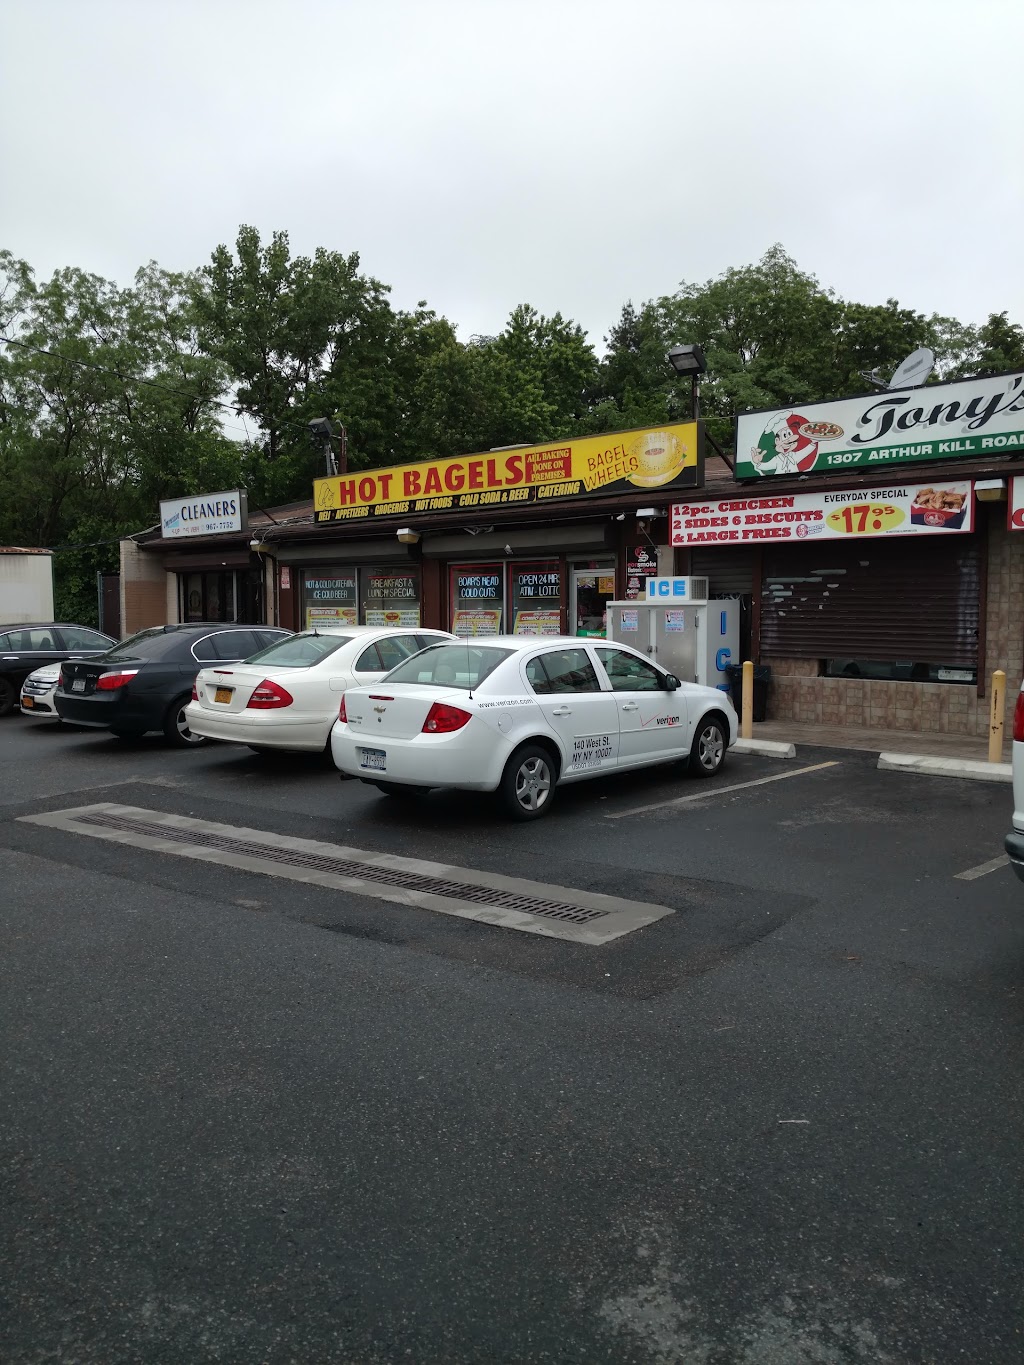 Hot Bagels | 1307 Arthur Kill Rd, Staten Island, NY 10312 | Phone: (718) 227-2202